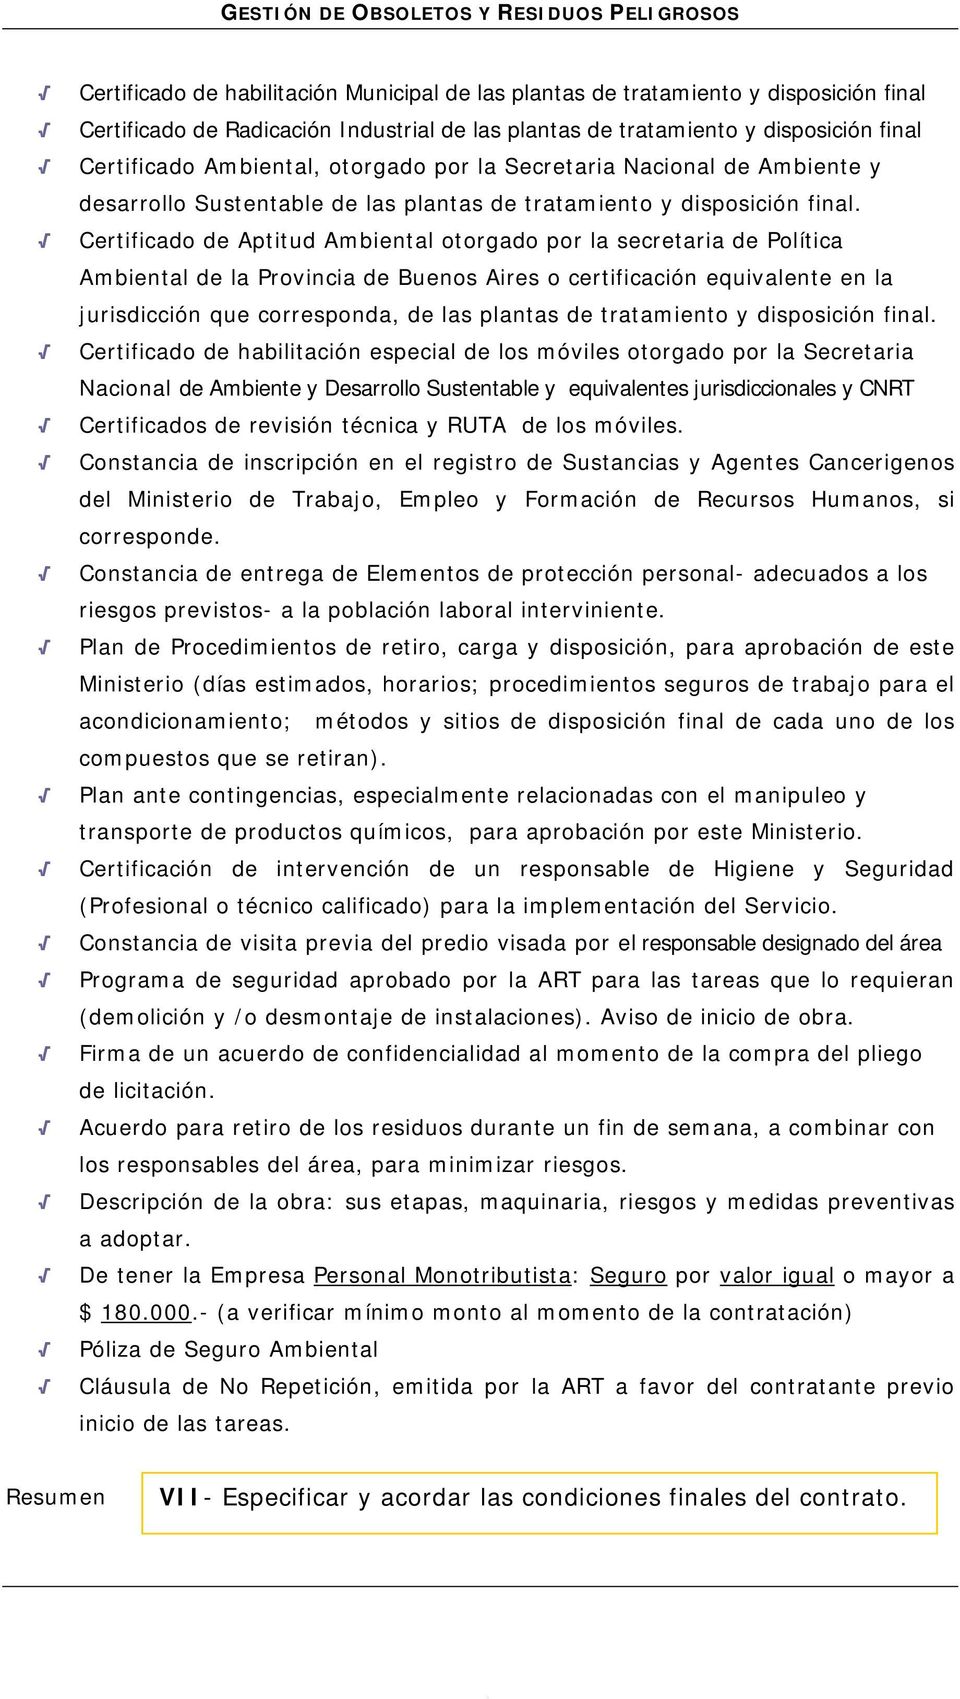 Certificado de Aptitud Ambiental otorgado por la secretaria de Política Ambiental de la Provincia de Buenos Aires o certificación equivalente en la jurisdicción que corresponda, de las plantas de